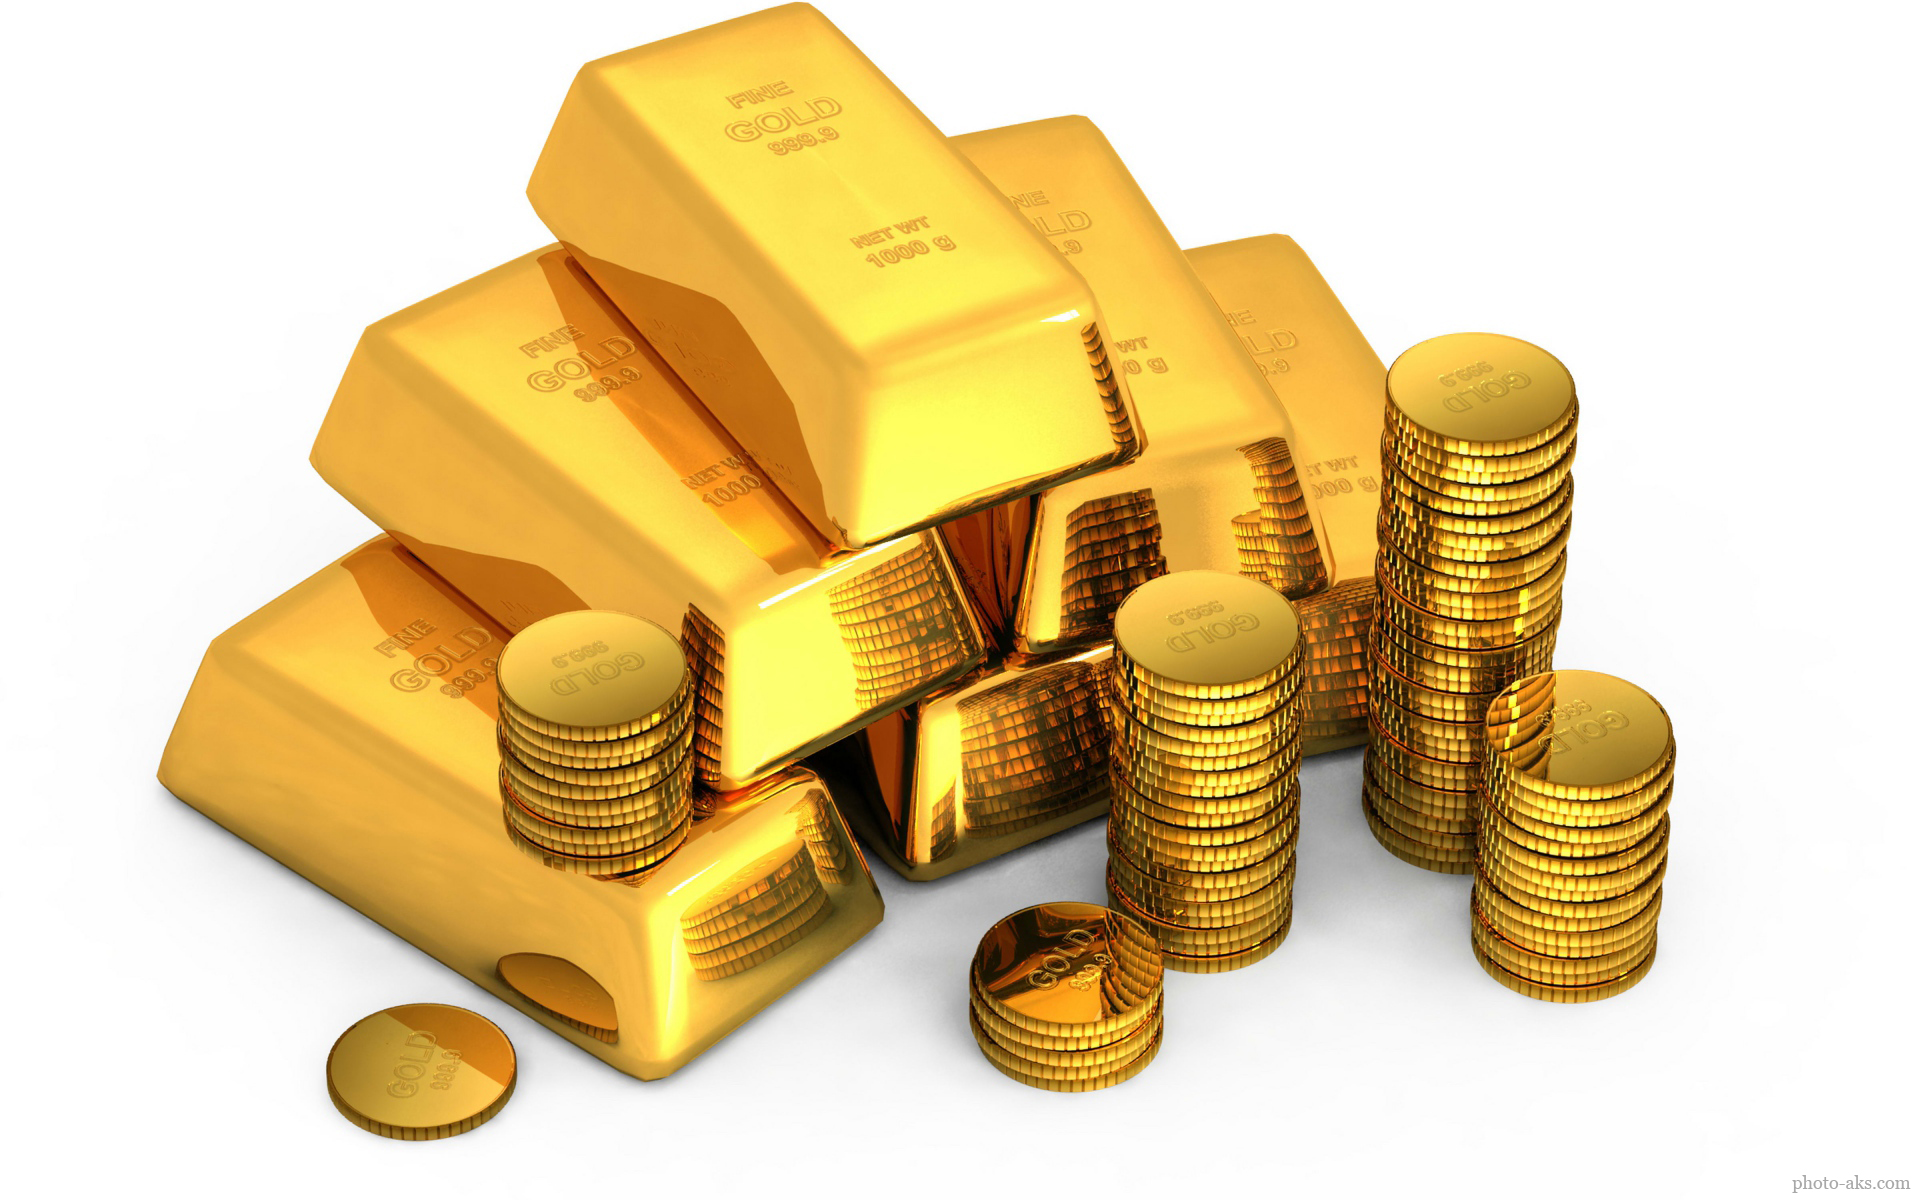 رشد نامحسوس قیمت طلا/ چرا حباب سکه بزرگ تر شد؟